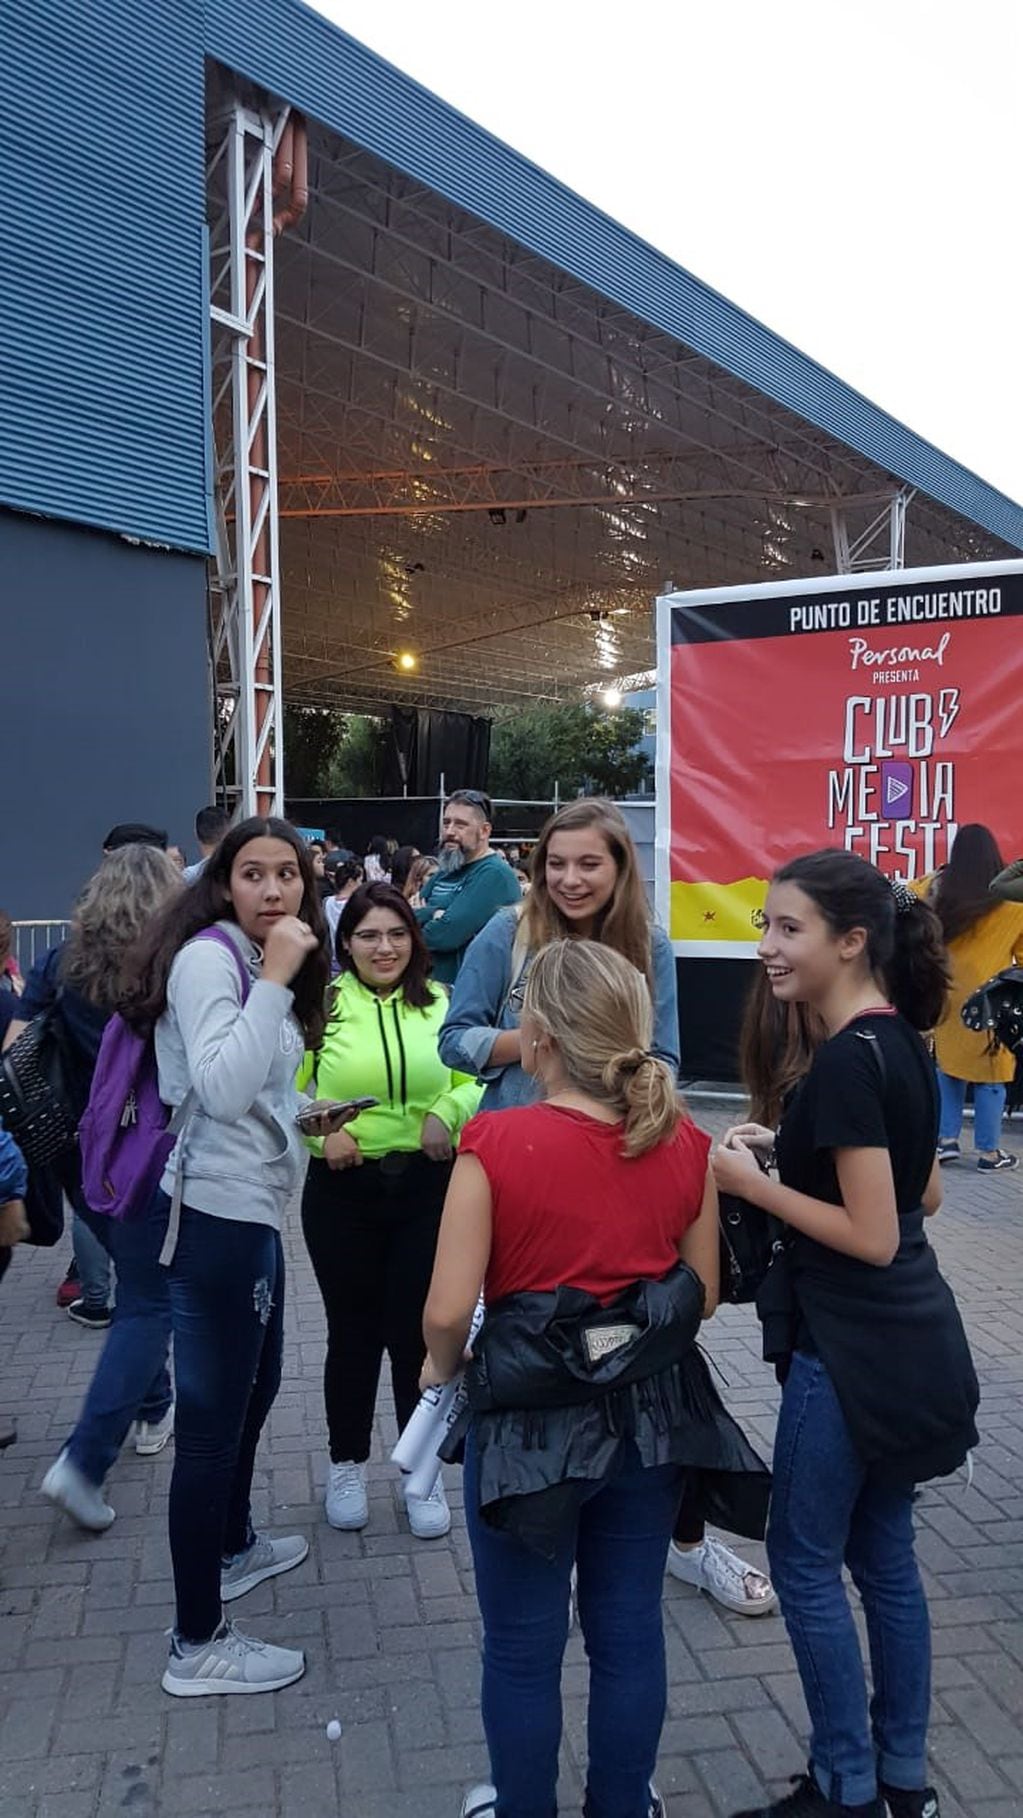 El Club Media Fest pasó por Córdoba y congregó a una multitud de chicos seguidores de los youtubers y padres acompañando su entusiasmo.